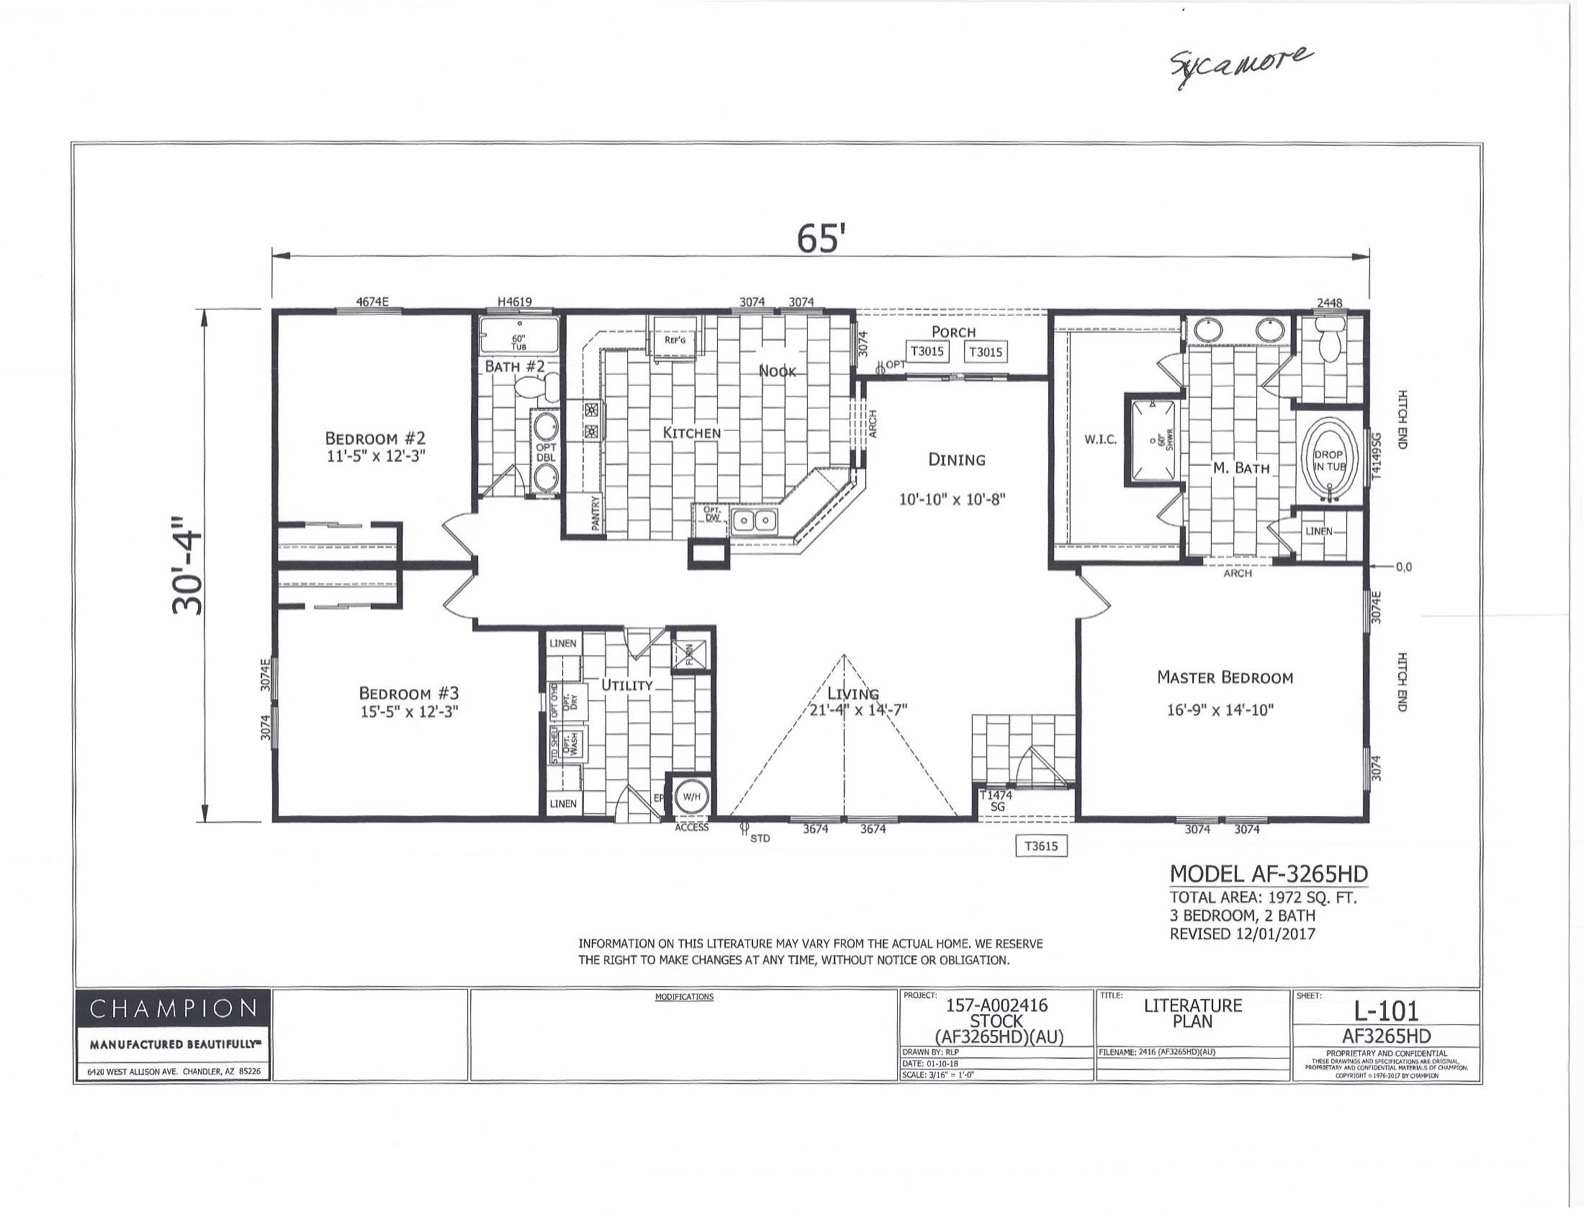 Homes Direct Modular Homes - Model AF3265HD - Floorplan